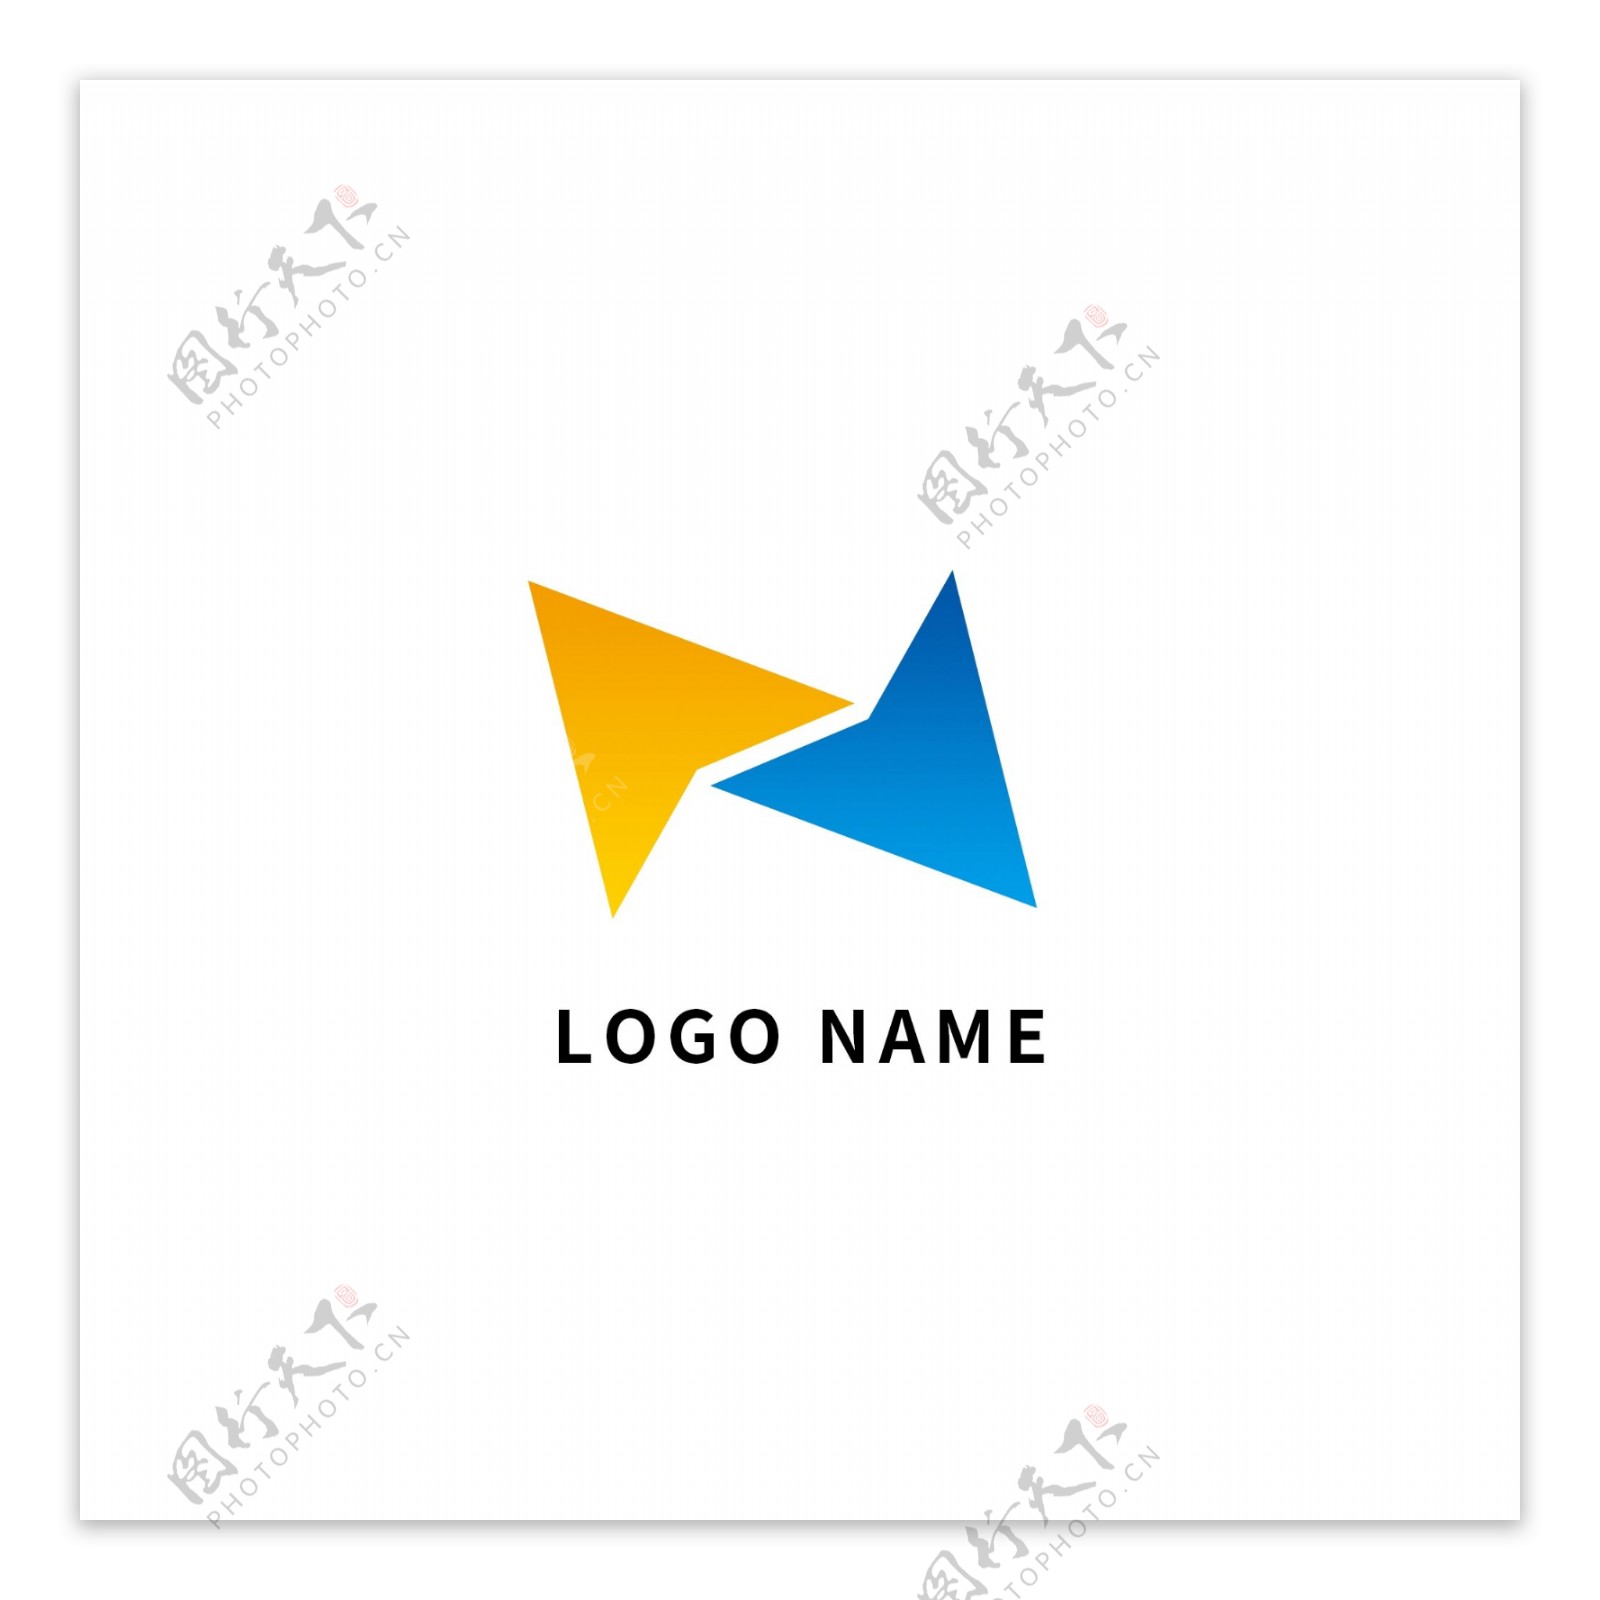 蓝色黄色箭头几何商务企业大气logo